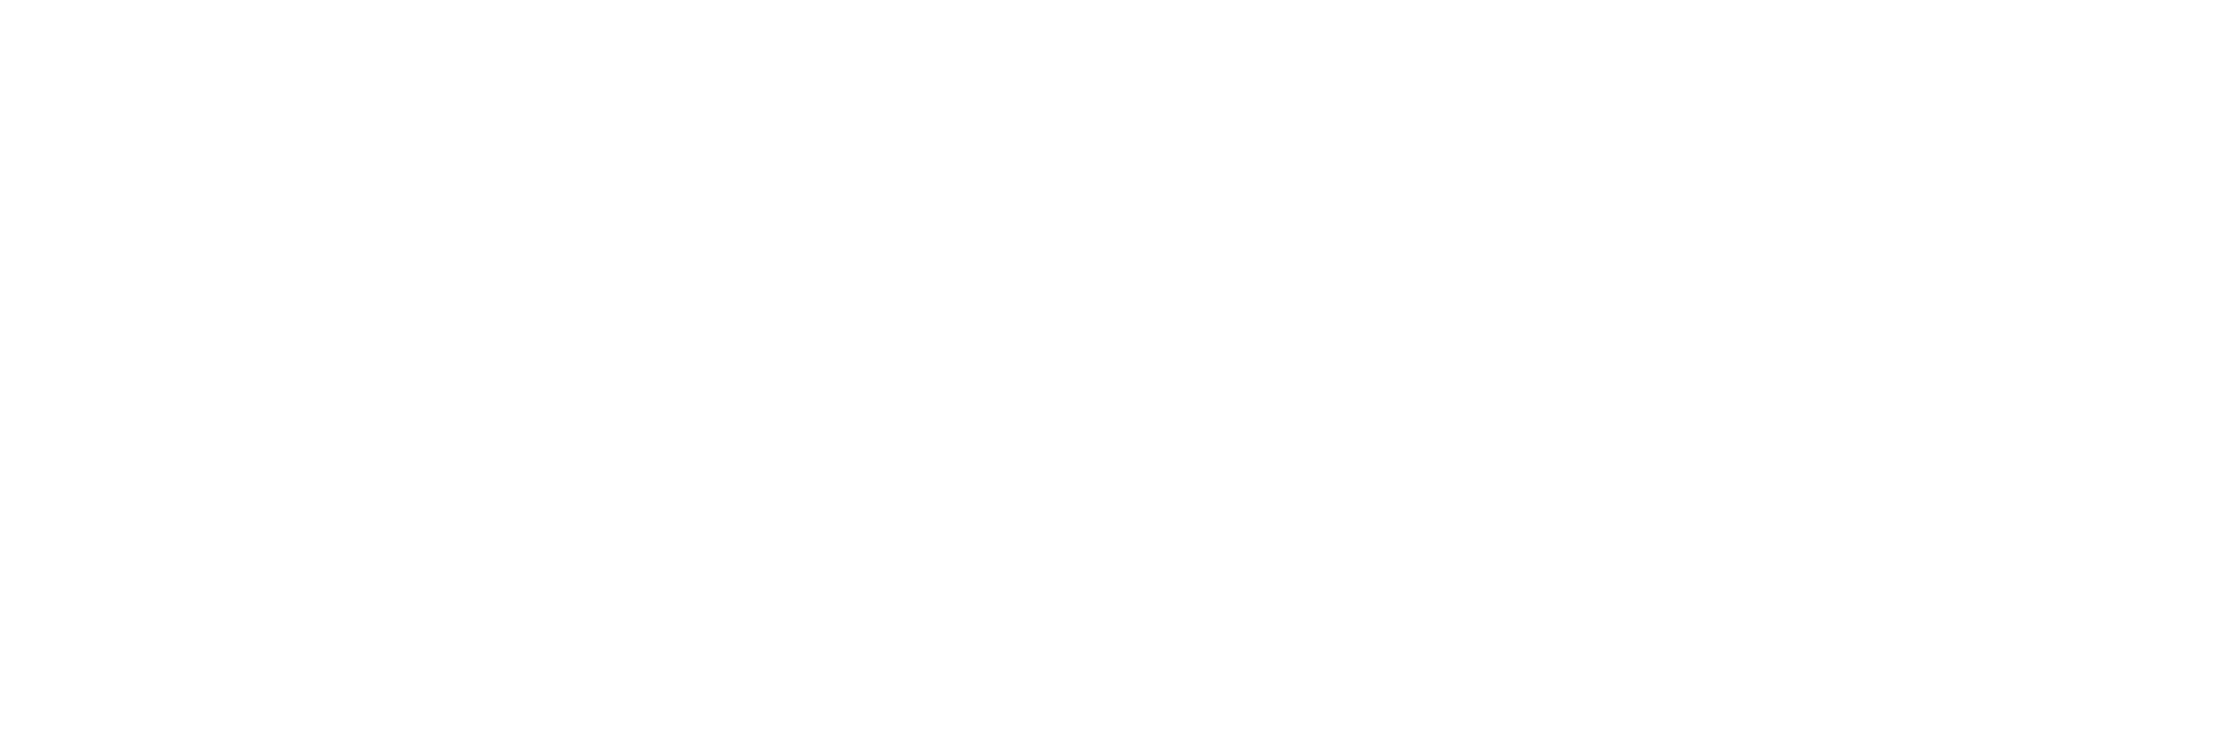 GT Academy